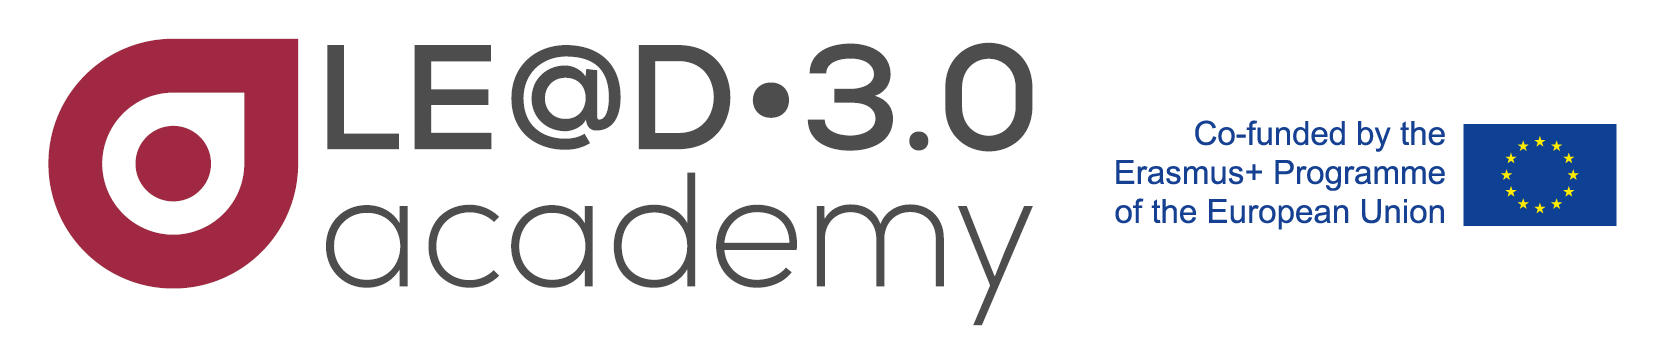 Le@d3.0 Academy logo